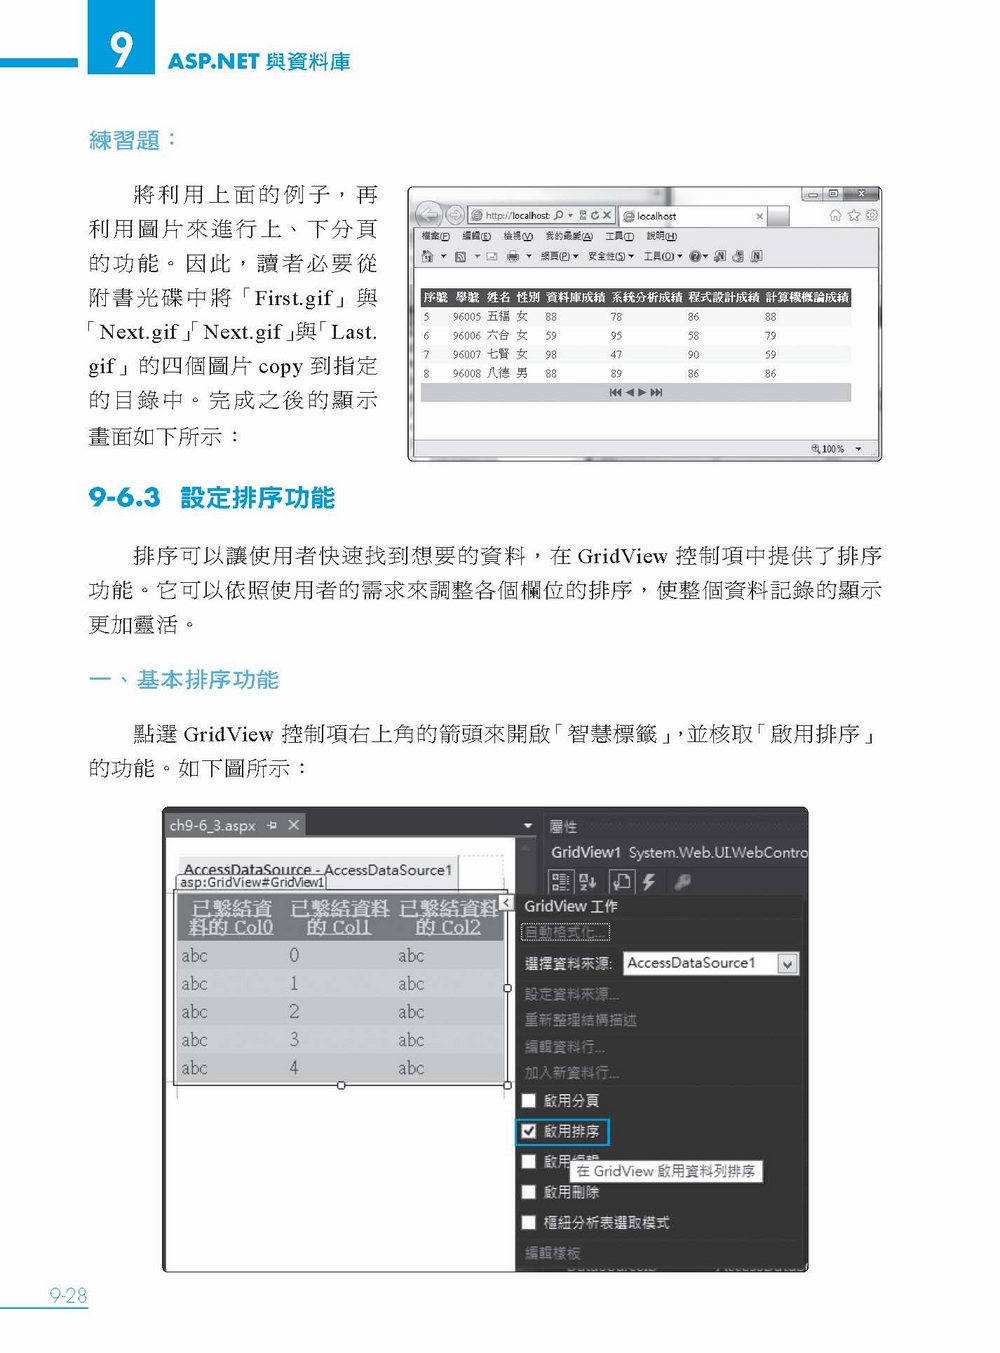 ►GO►最新優惠► 【書籍】互動式網站程式設計：ASP.NET 4.5使用VB 2013